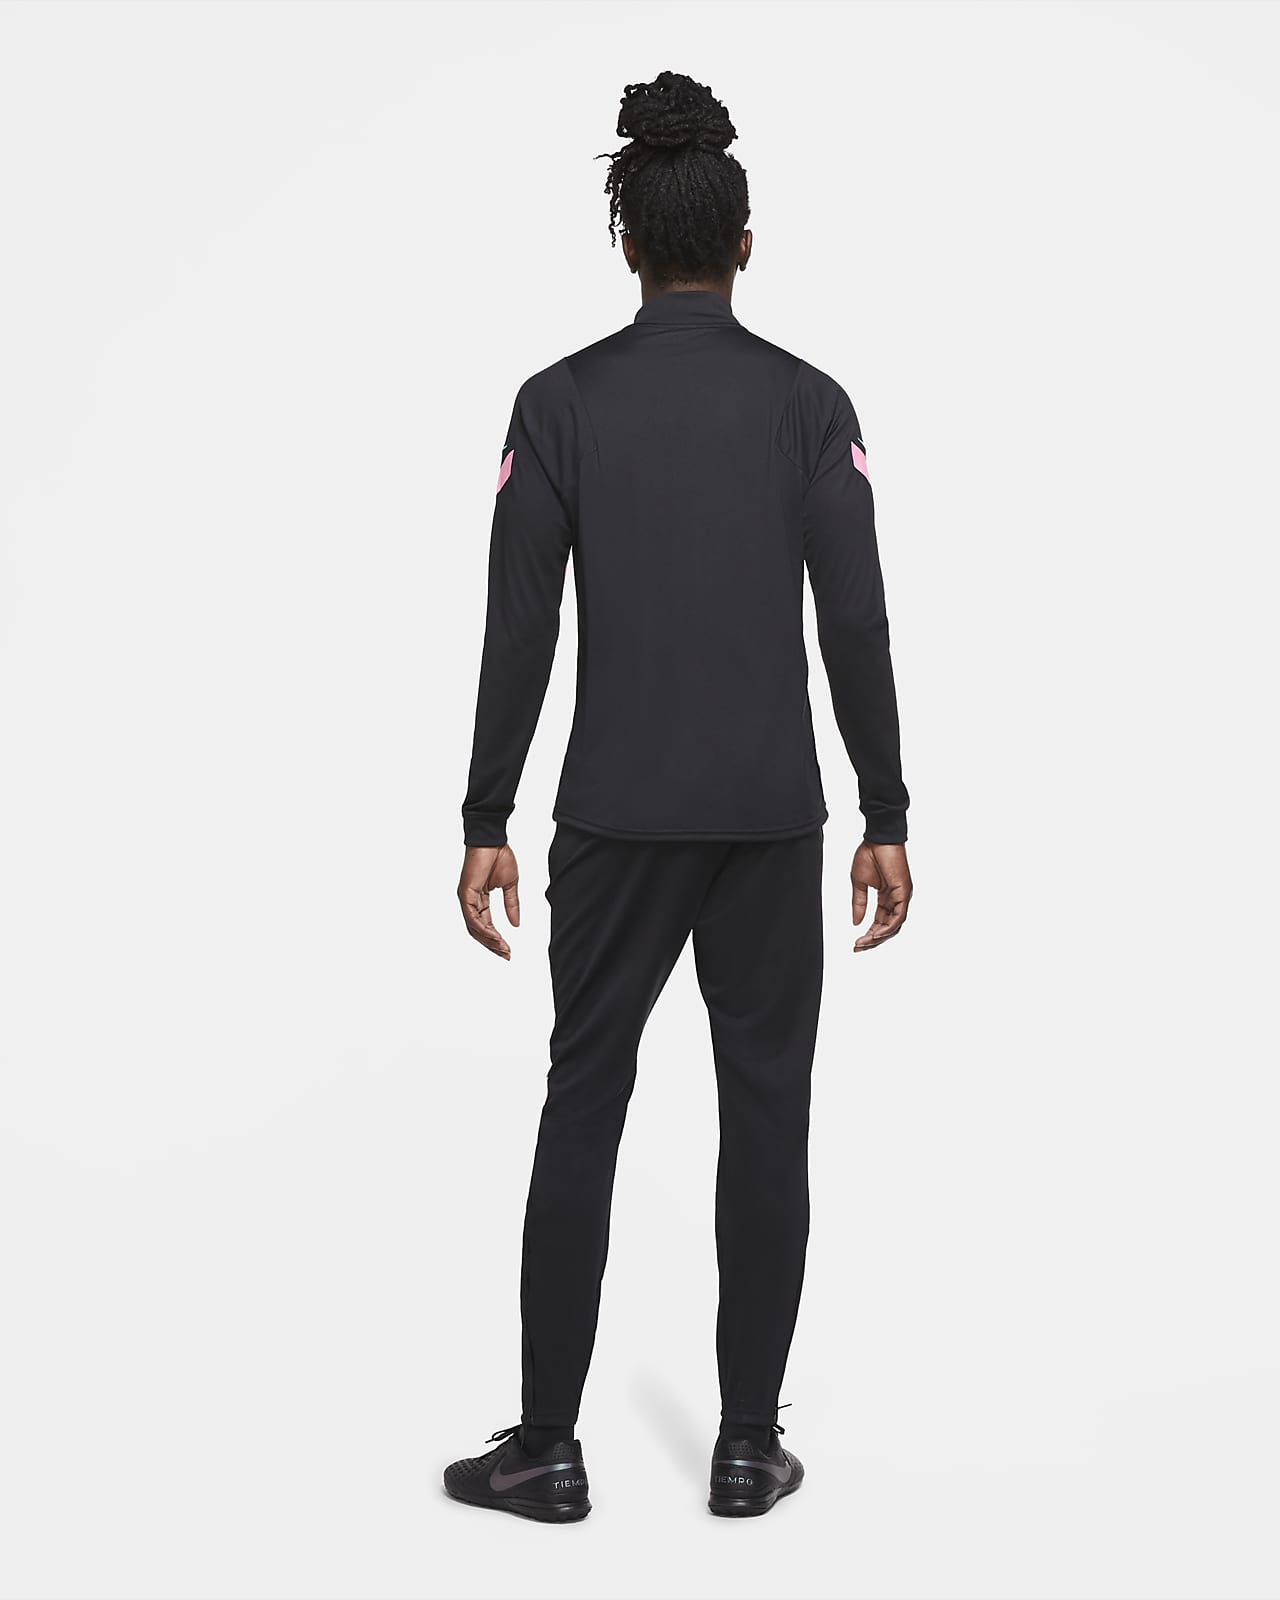 Nike公式 Fc バルセロナ ストライク メンズ ニット サッカートラックスーツ オンラインストア 通販サイト